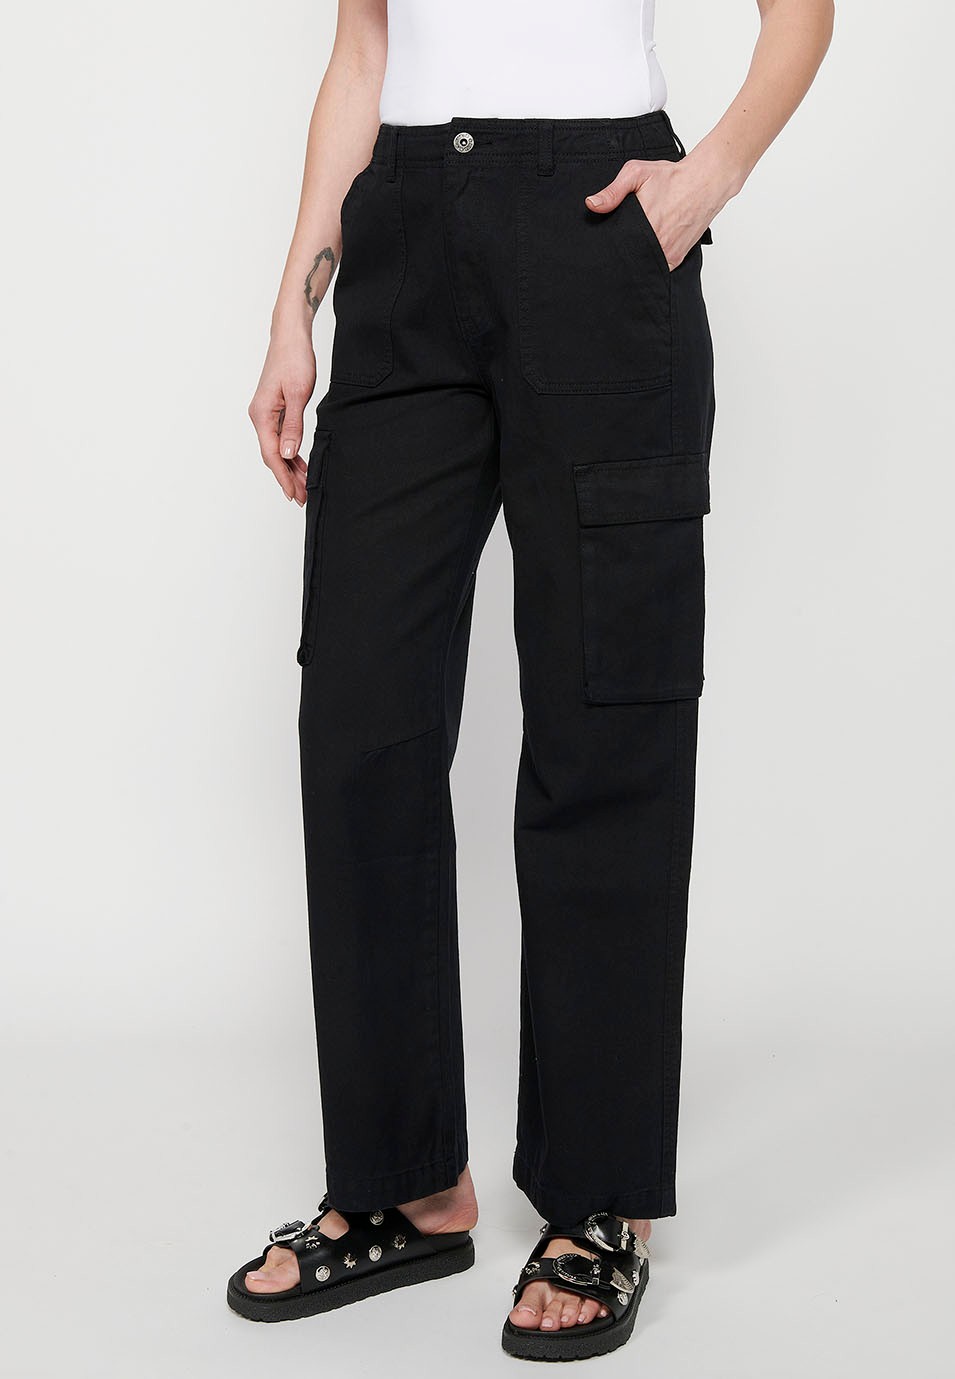 Pantalon cargo long en coton avec poches, coloris noir pour femme